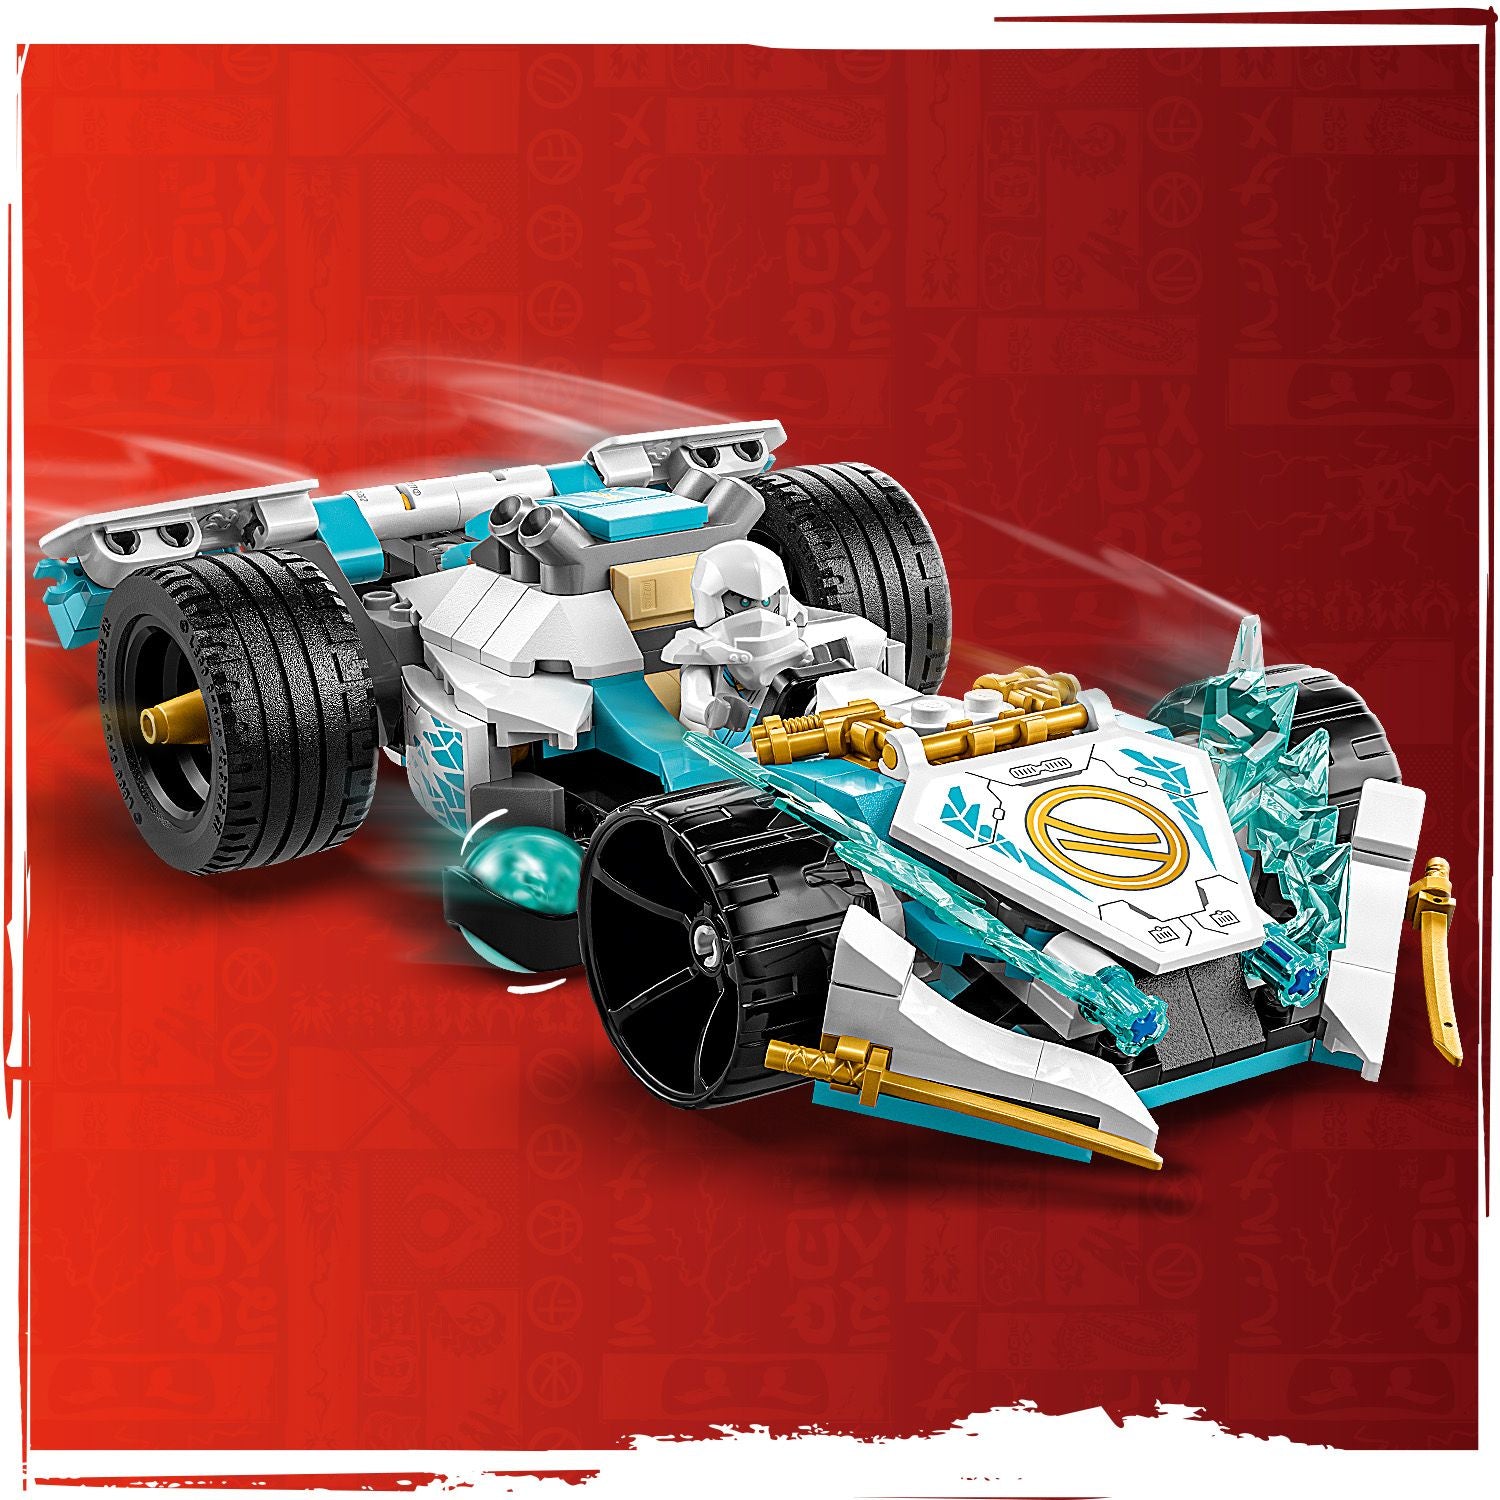 71791 - LEGO Ninjago - Auto da corsa Spinjitzu Dragon Power di Zane